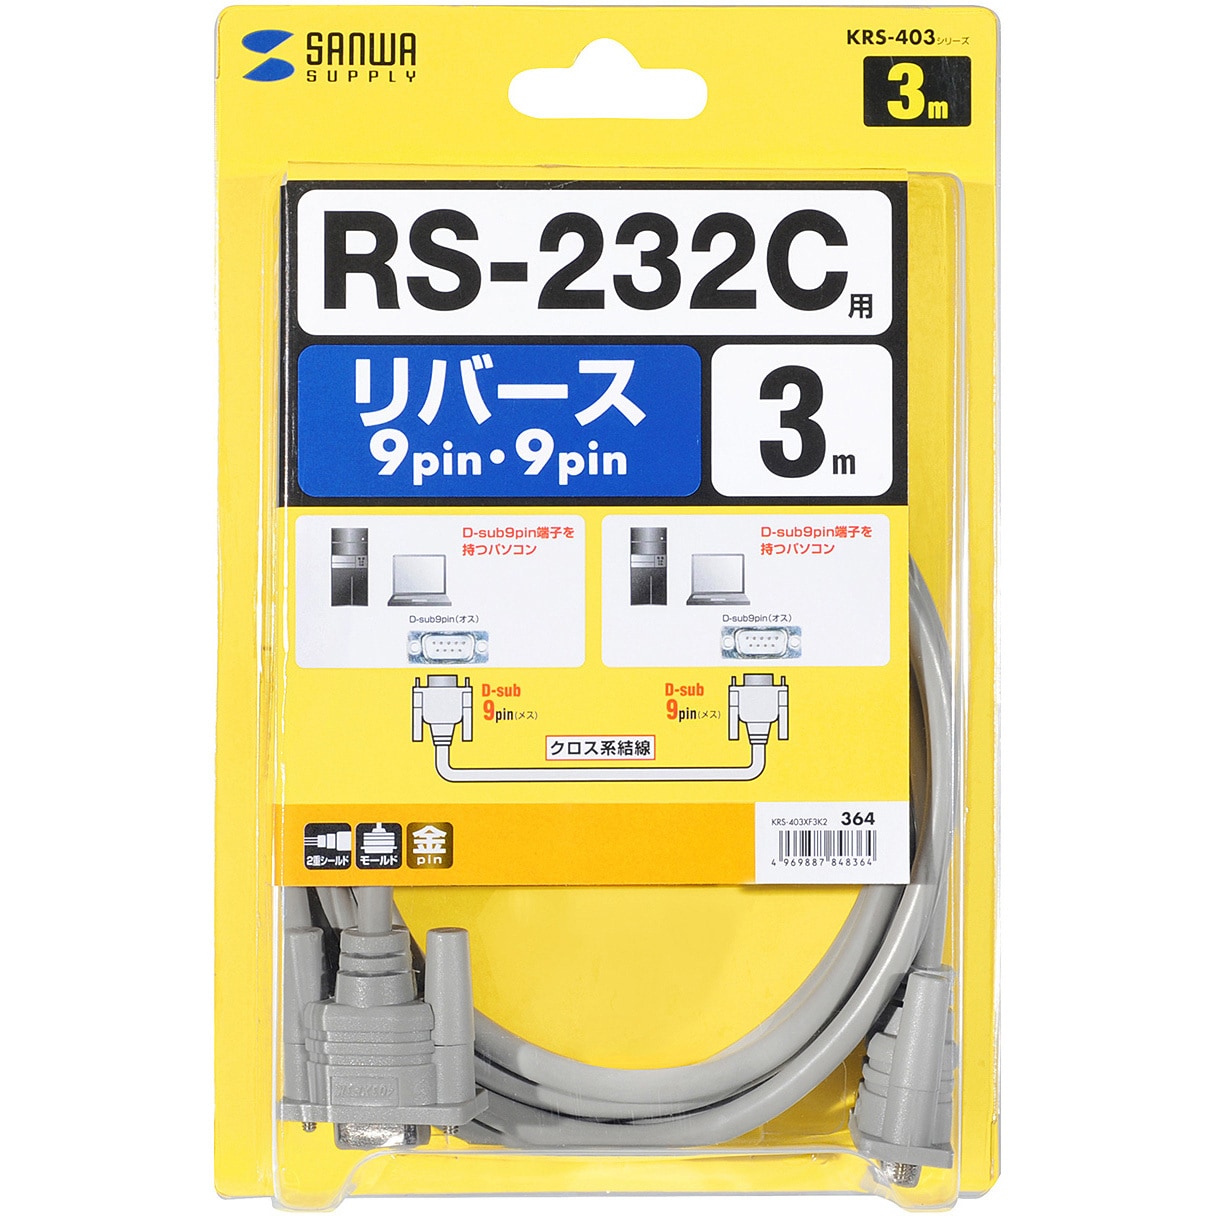 サンワサプライ RS-232Cケーブル 3m KRS-403XF3K2 メーカー在庫品 【ネット限定】